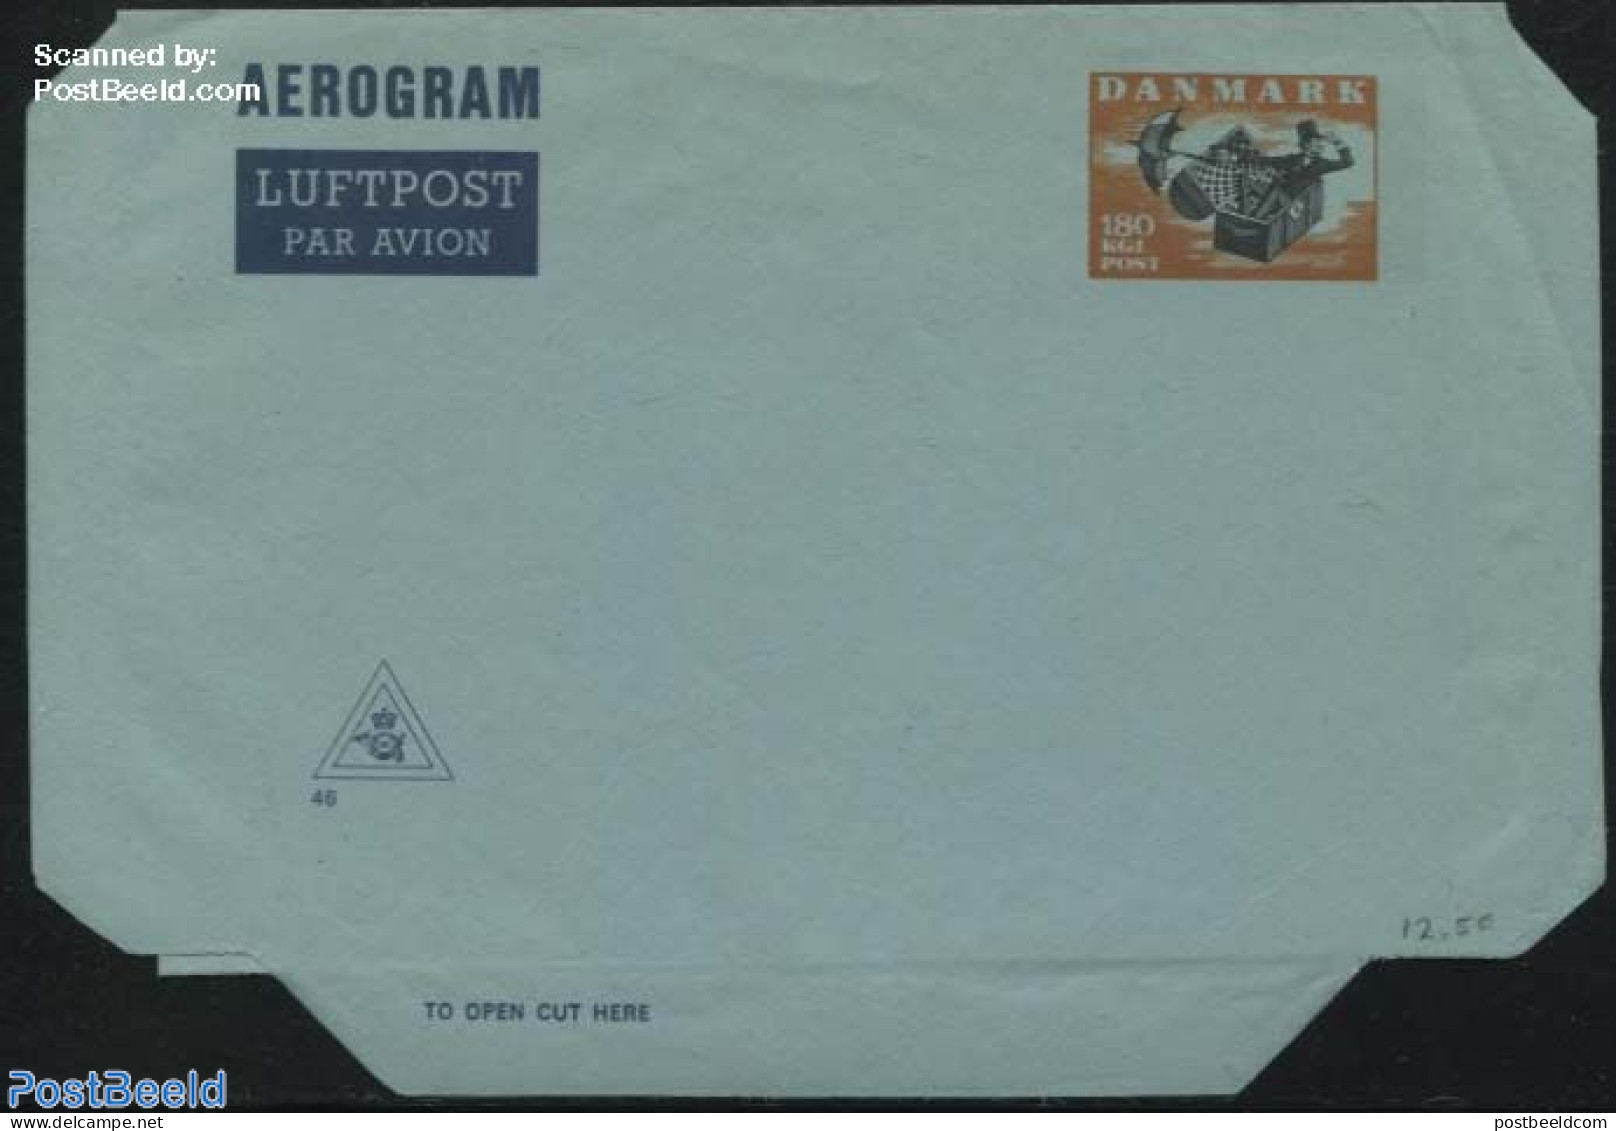 Denmark 1980 Aerogram 180 (KZ46), Unused Postal Stationary, Art - Fairytales - Storia Postale